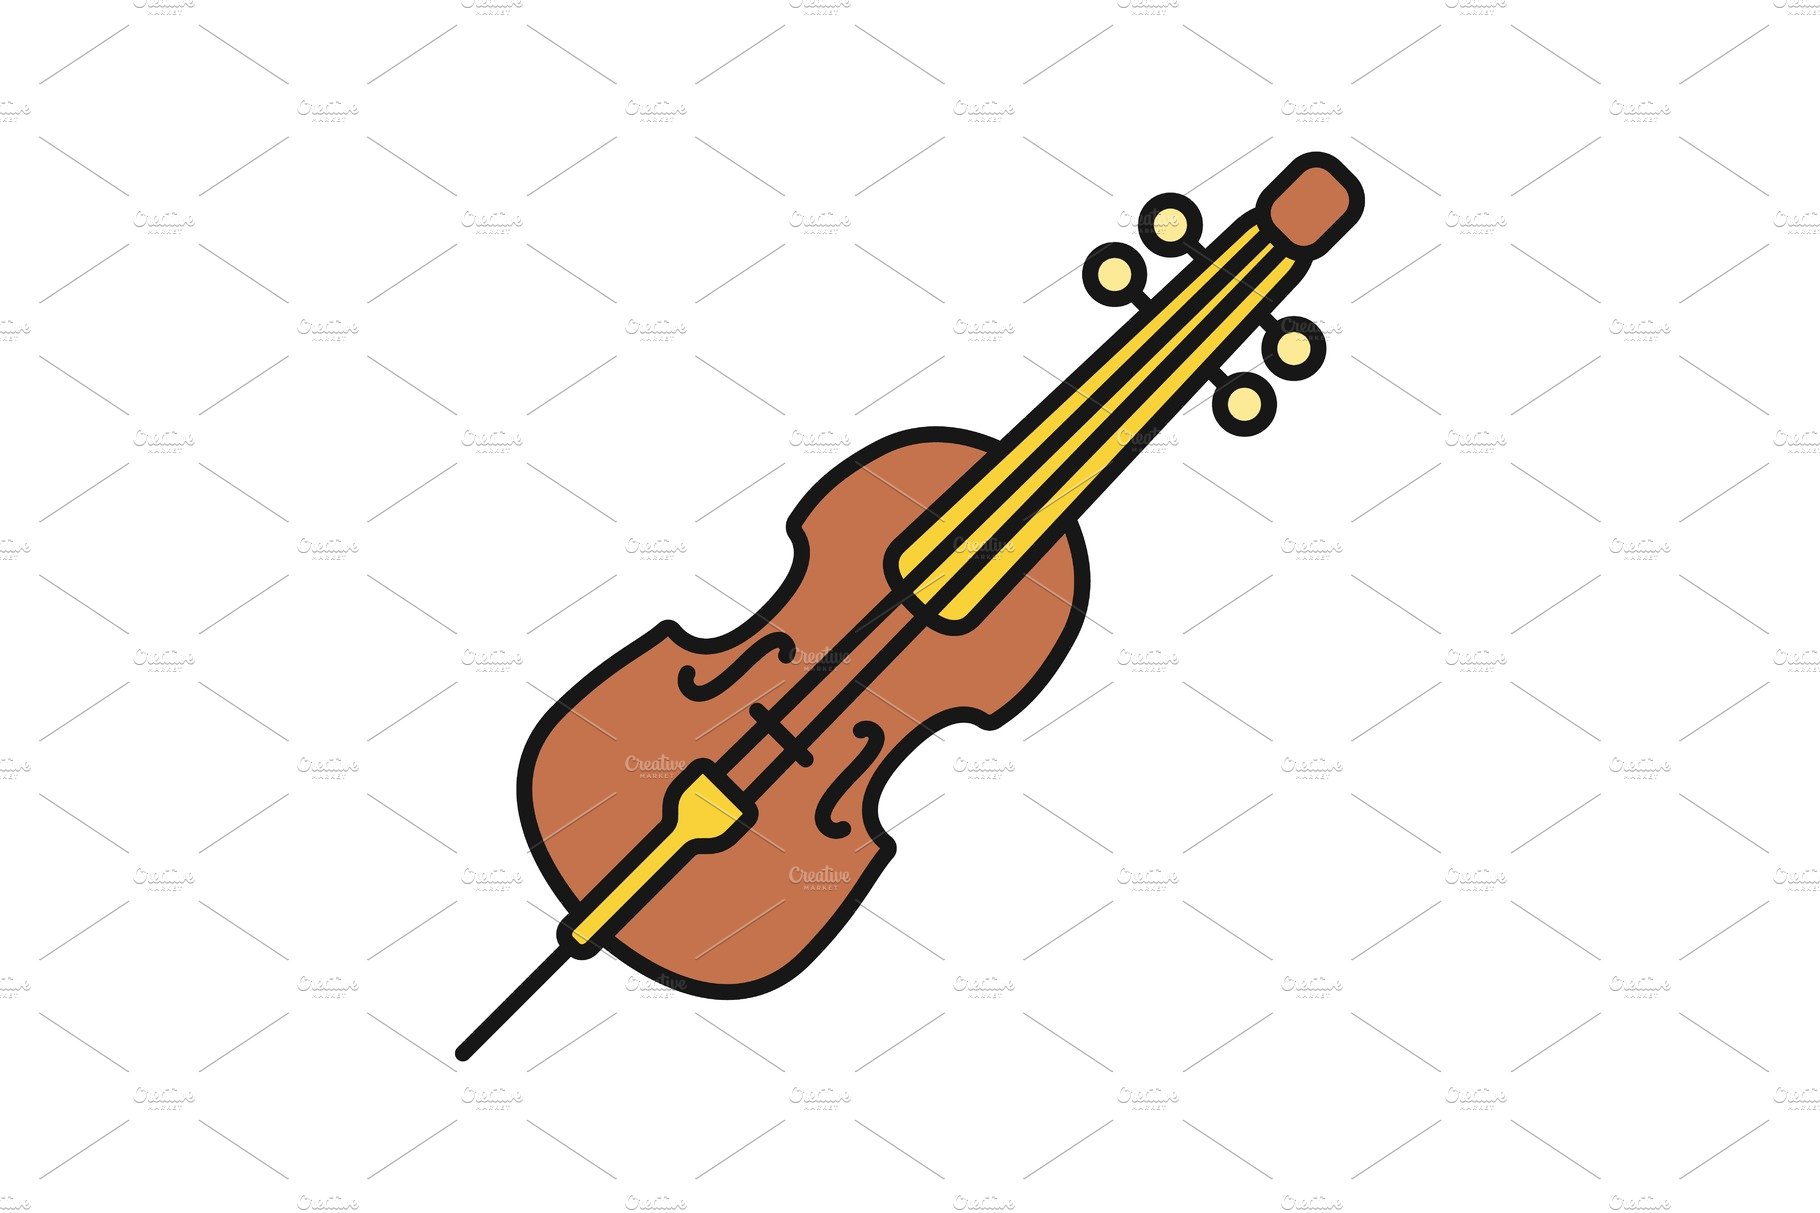 Cello color icon cover image.